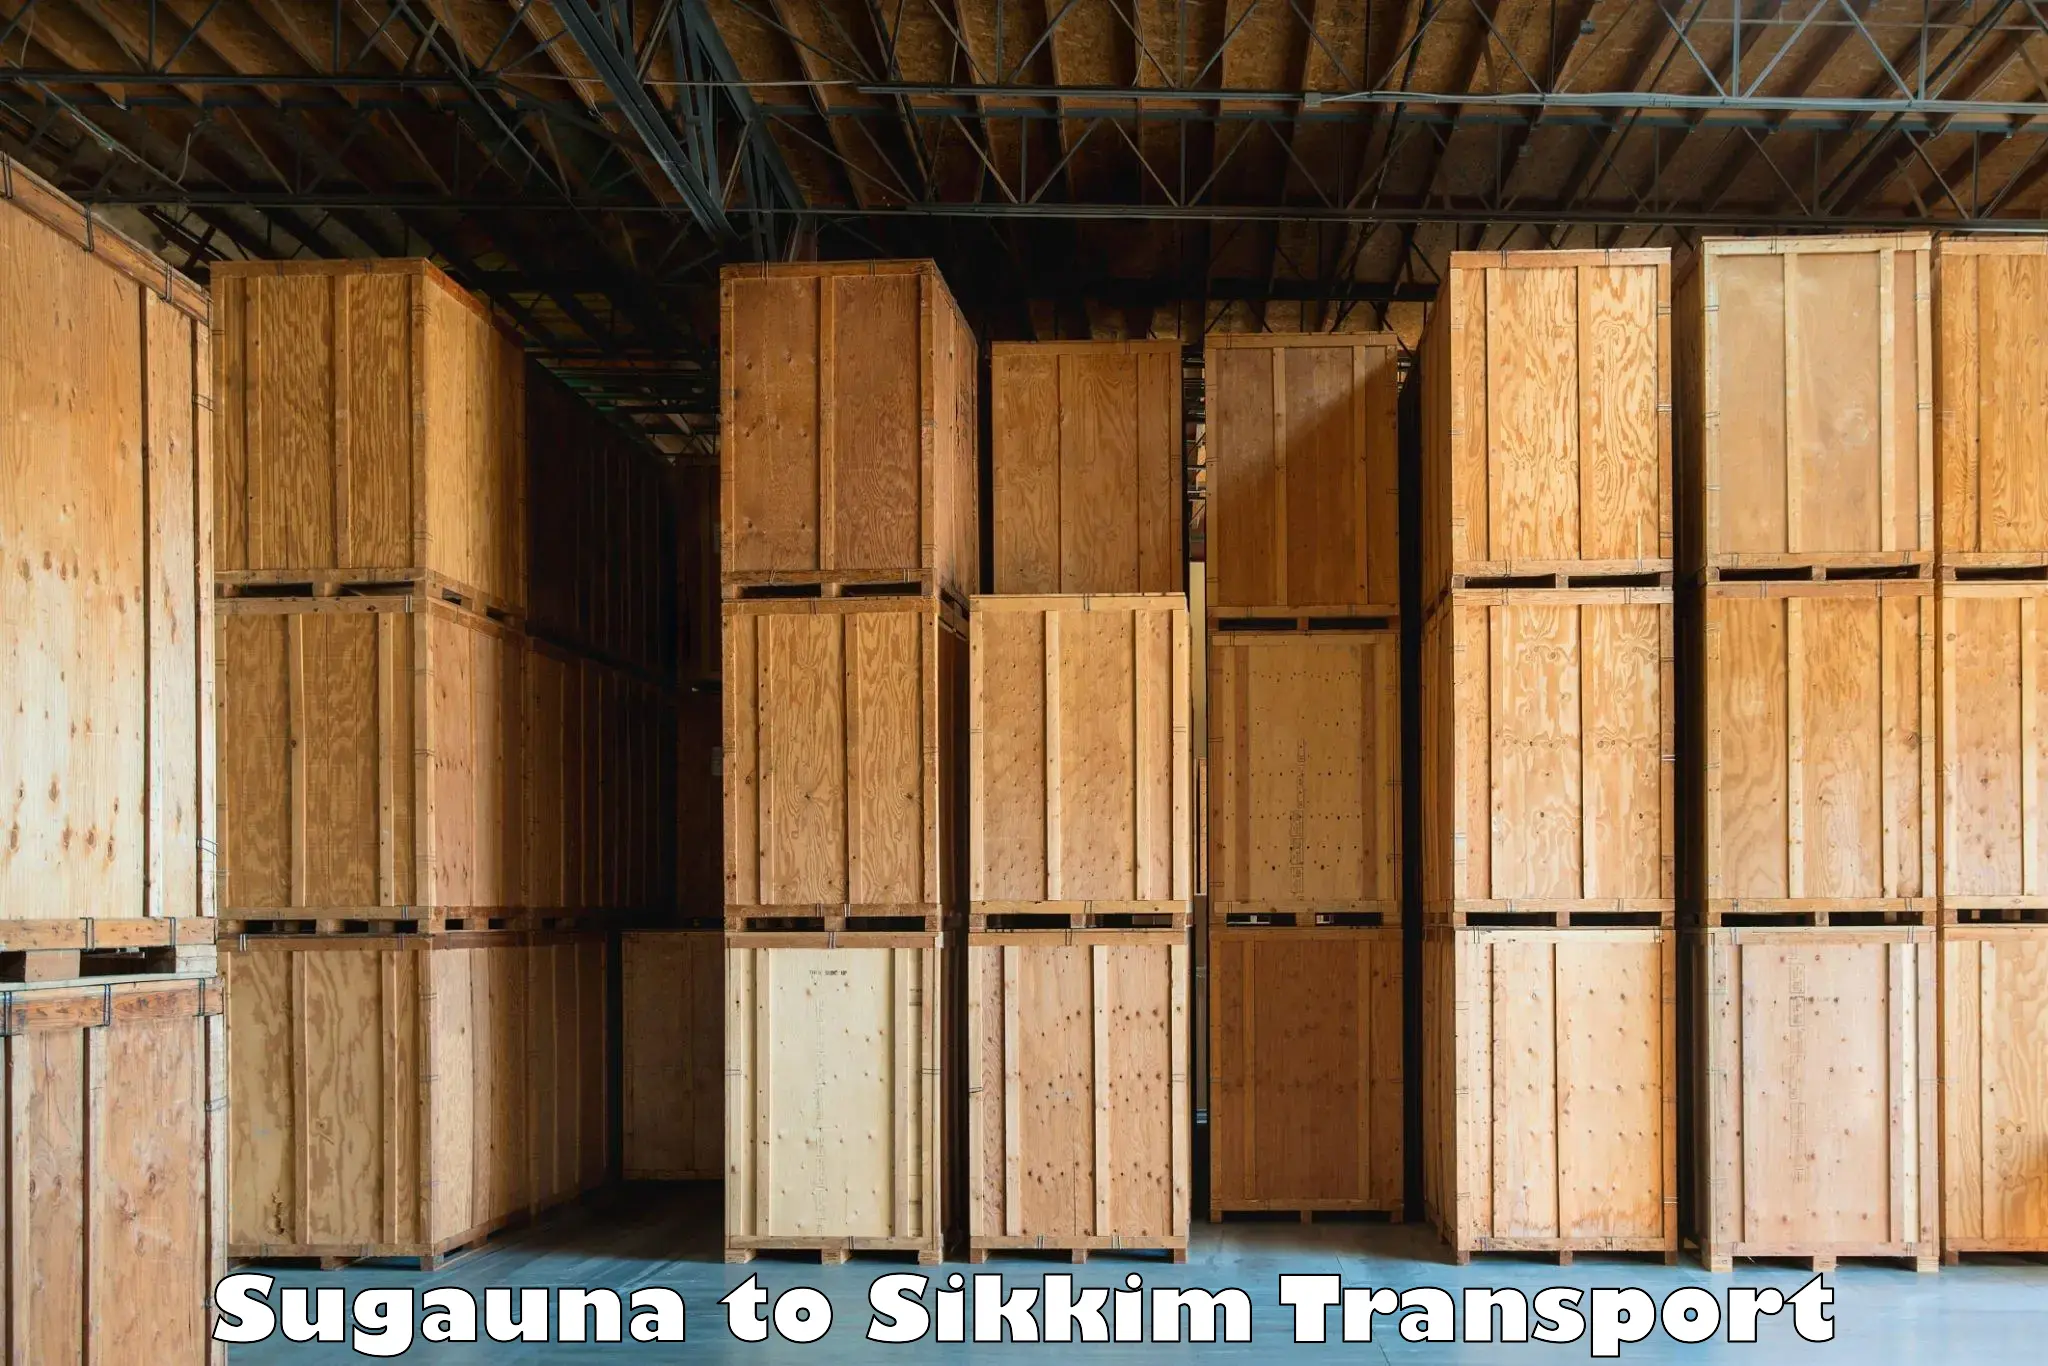 Two wheeler parcel service Sugauna to North Sikkim